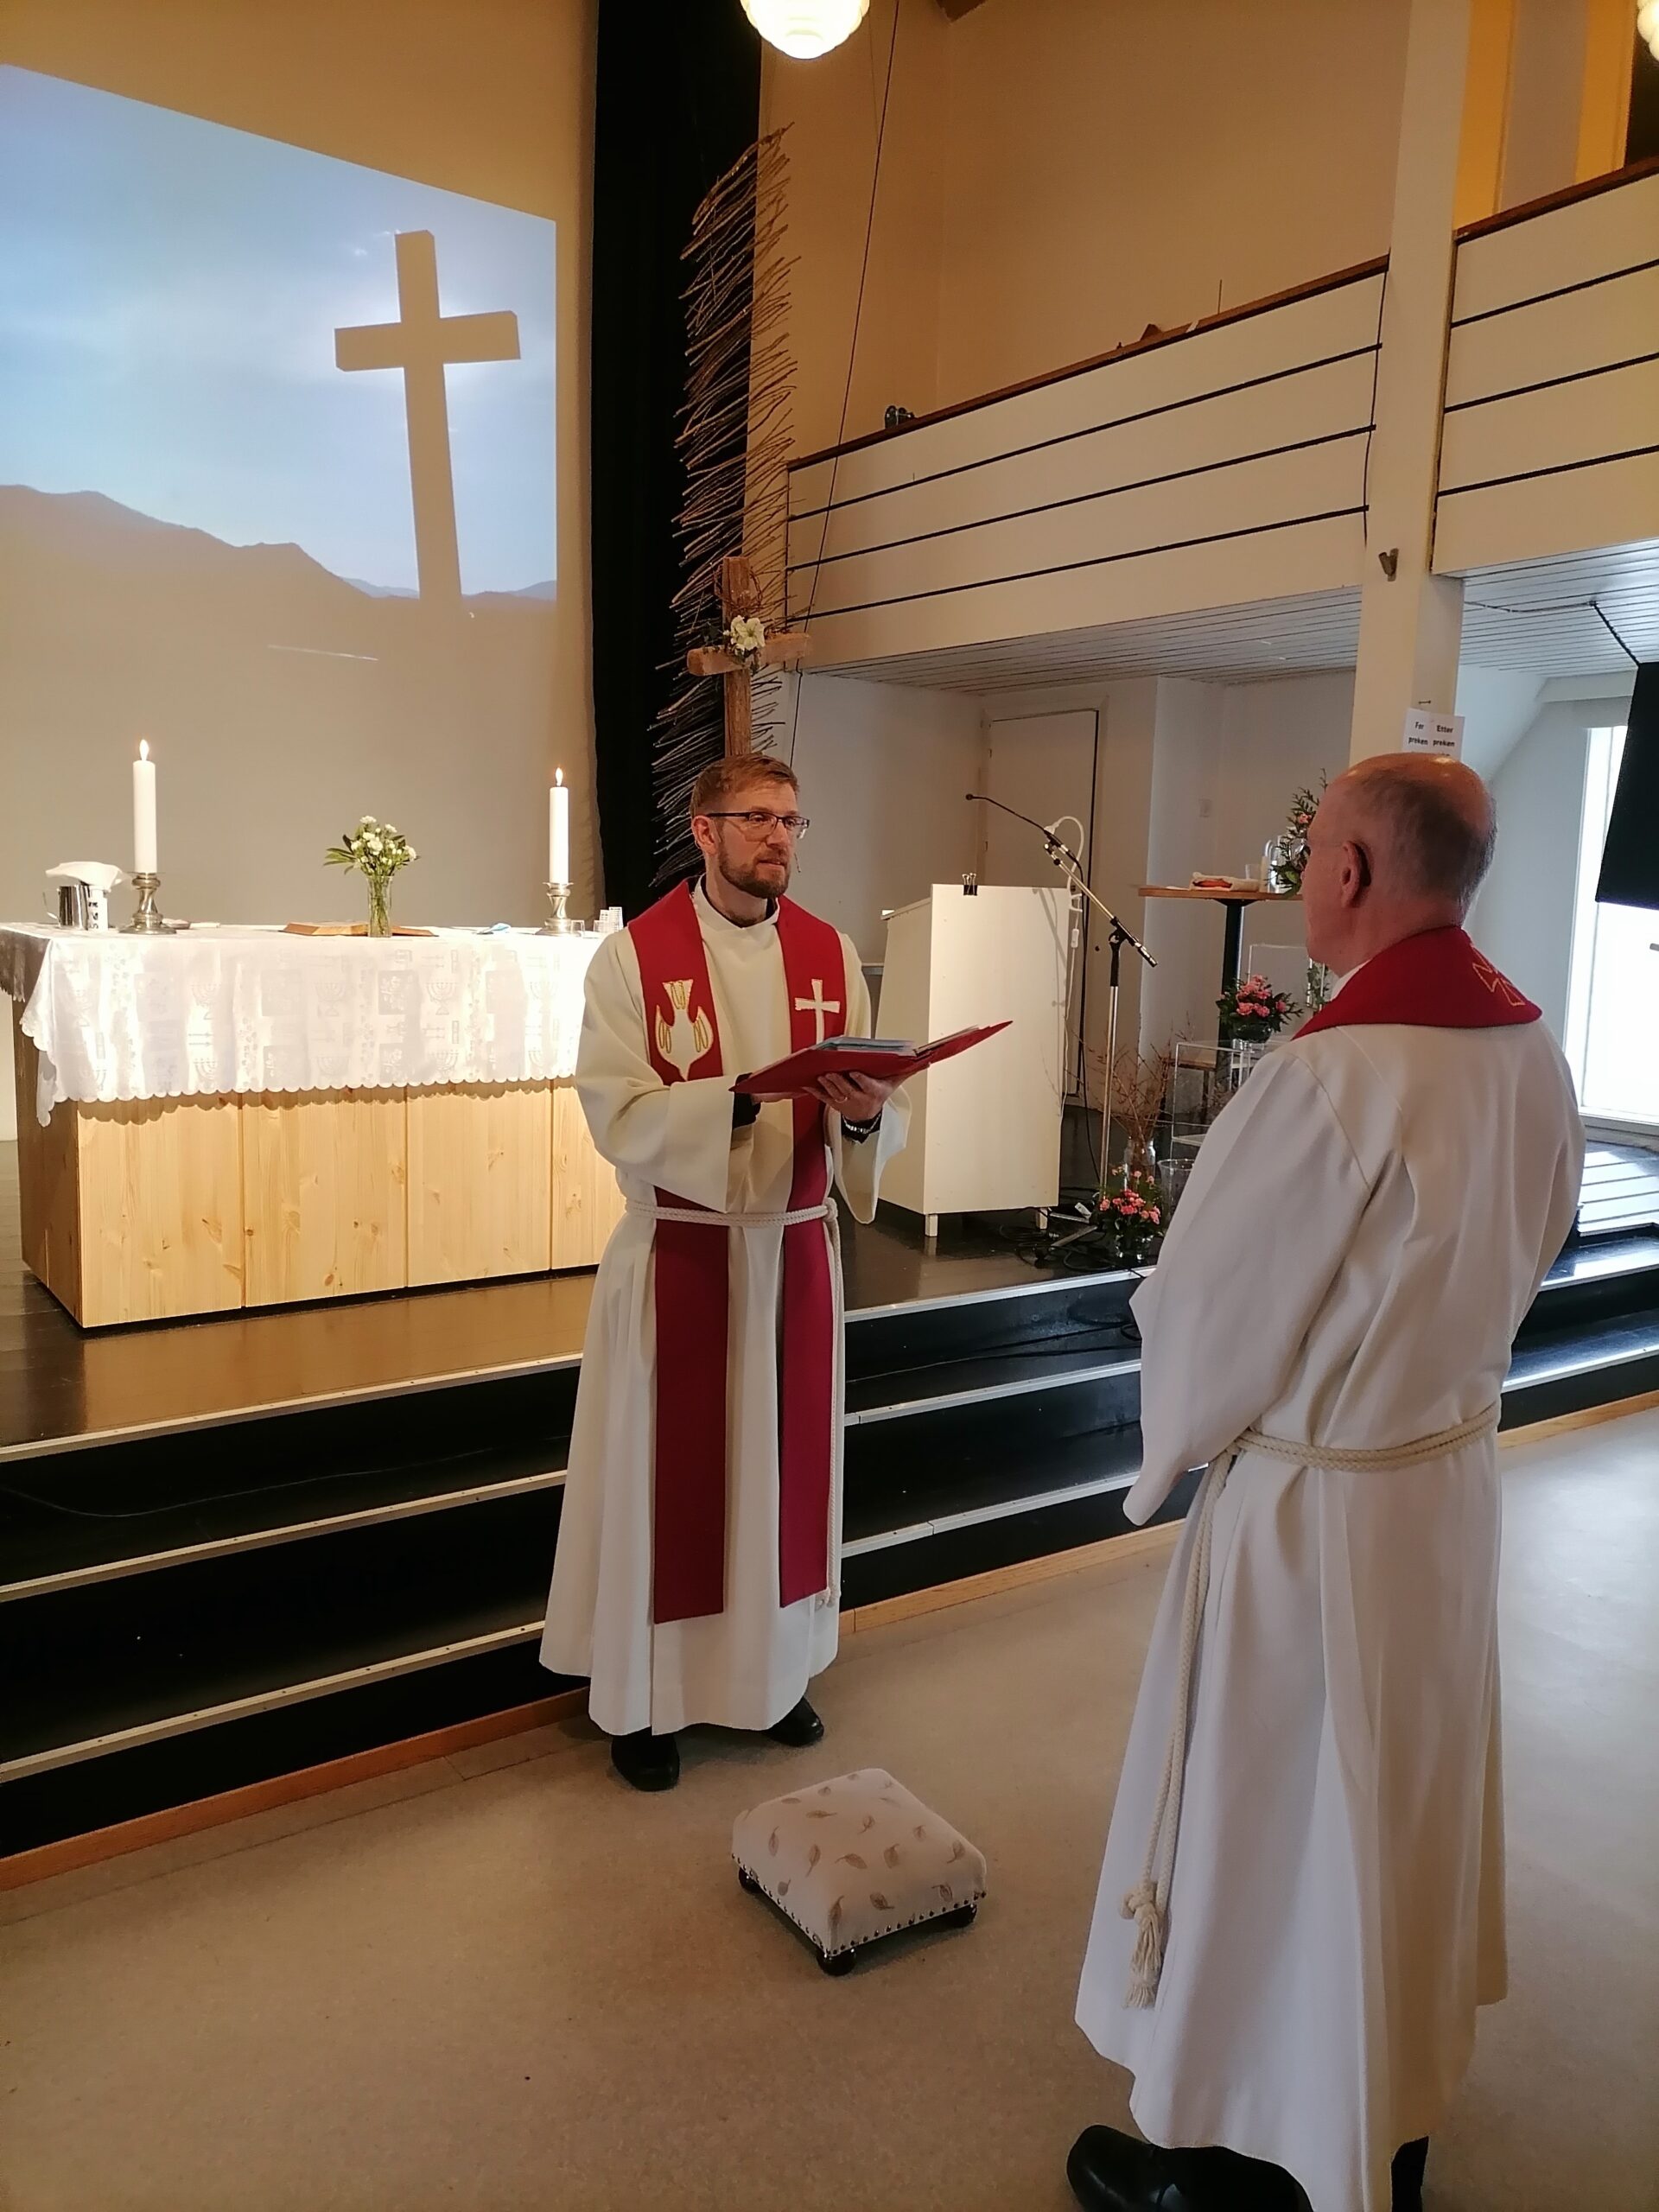 Ved den offisielle markeringen av Jæren menighet ble Stig Syvertsen innsatt til eldste og vikarprest av tilsynsmannen. Foto: Olaf E. Engestøl.